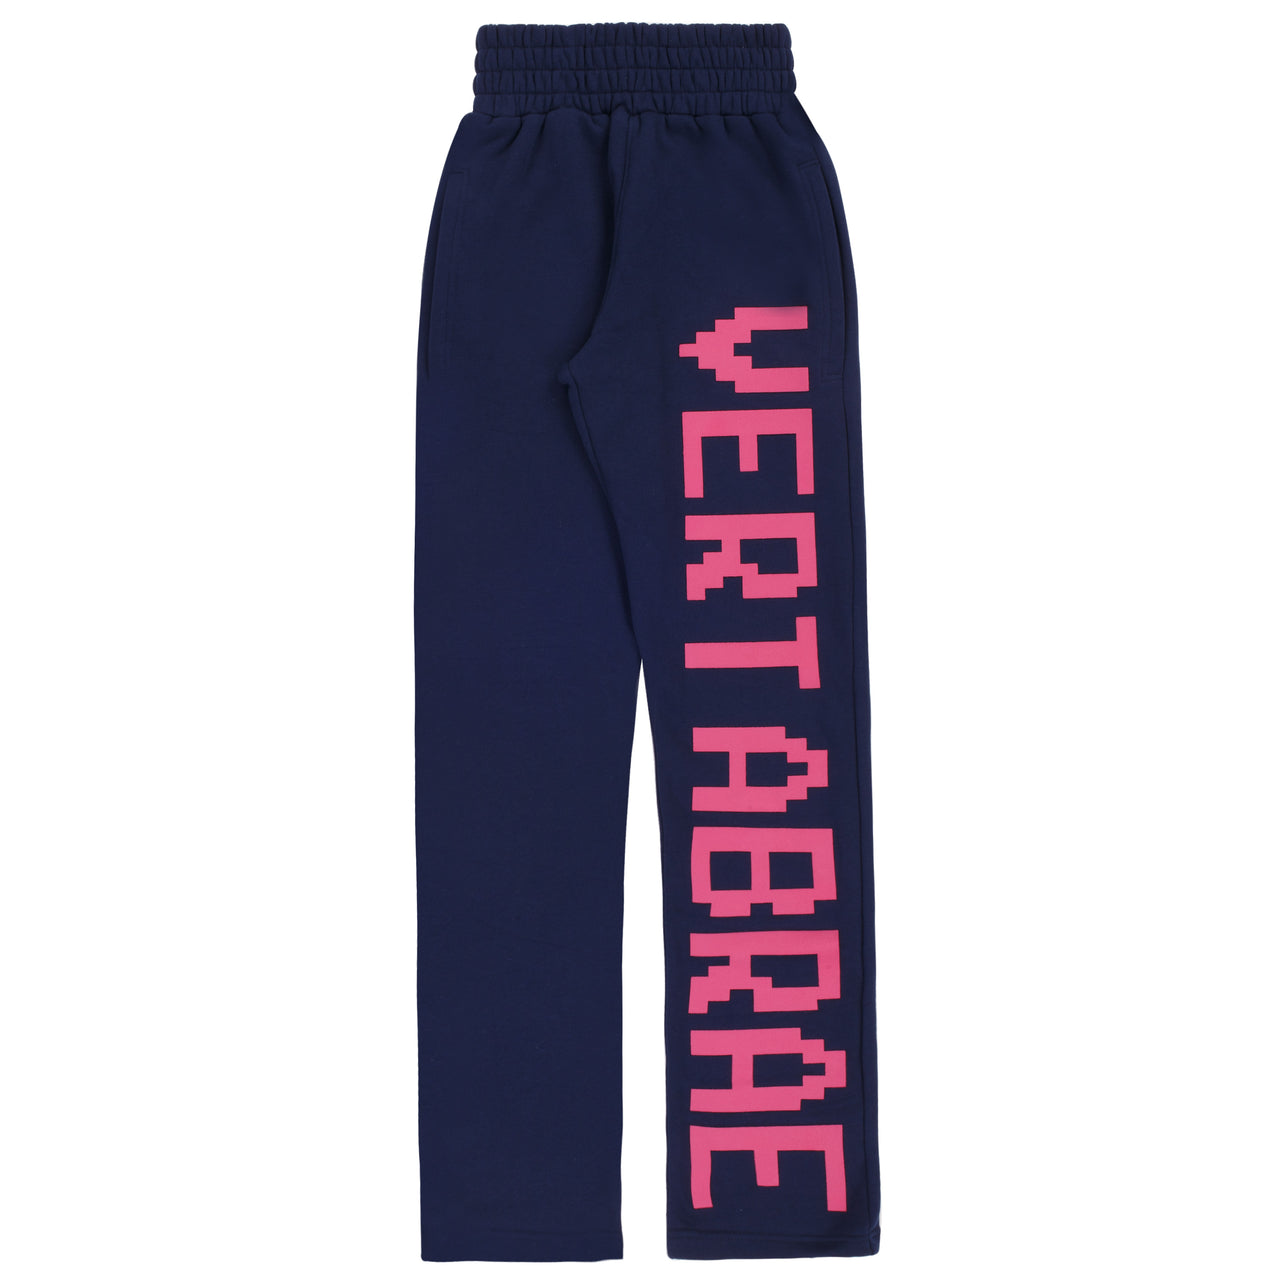 Vertabrae Logo Sweatpants Navy Pink